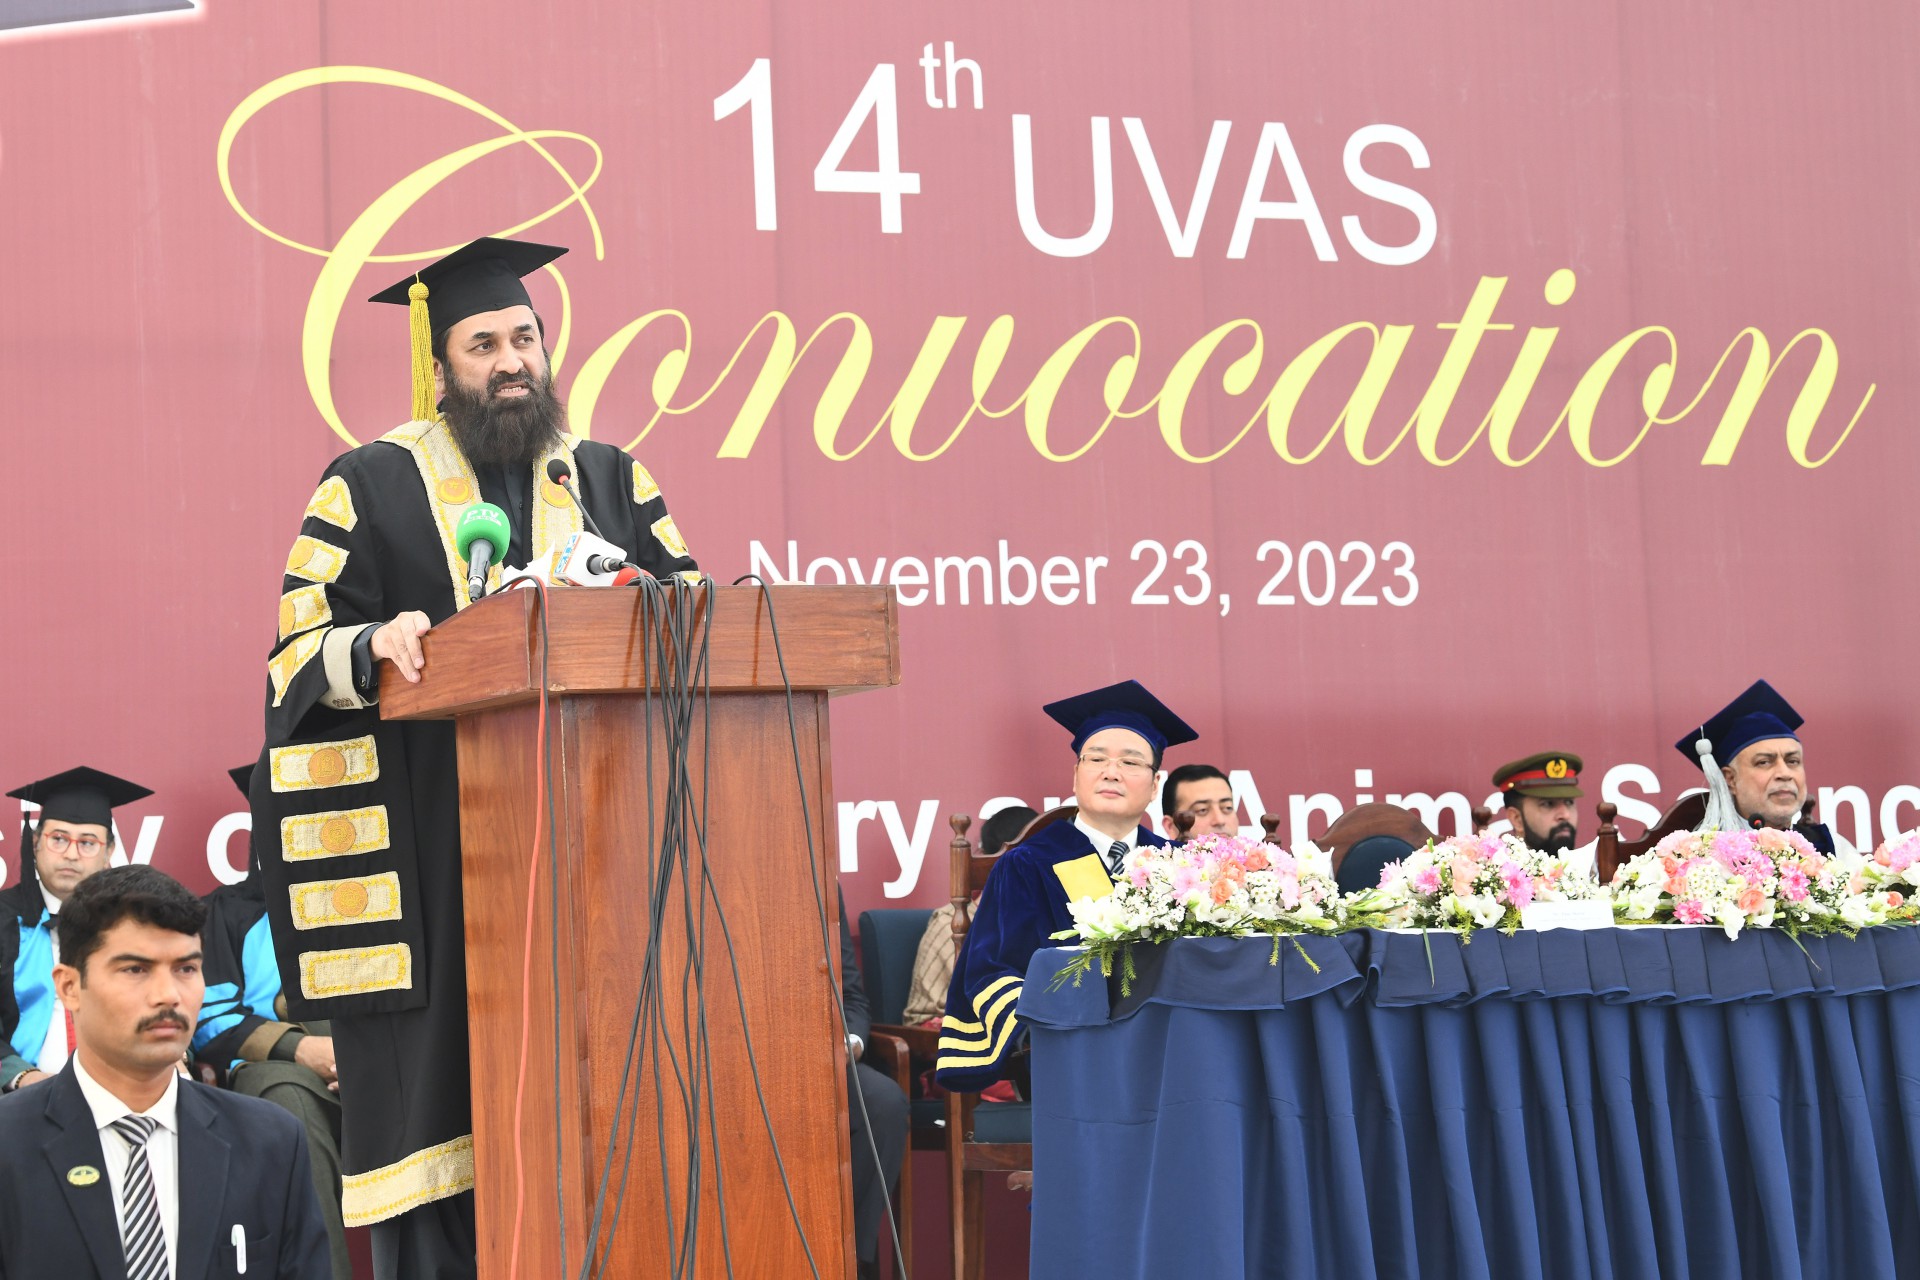 1,761 graduates awarded degrees at 14th UVAS Convocation